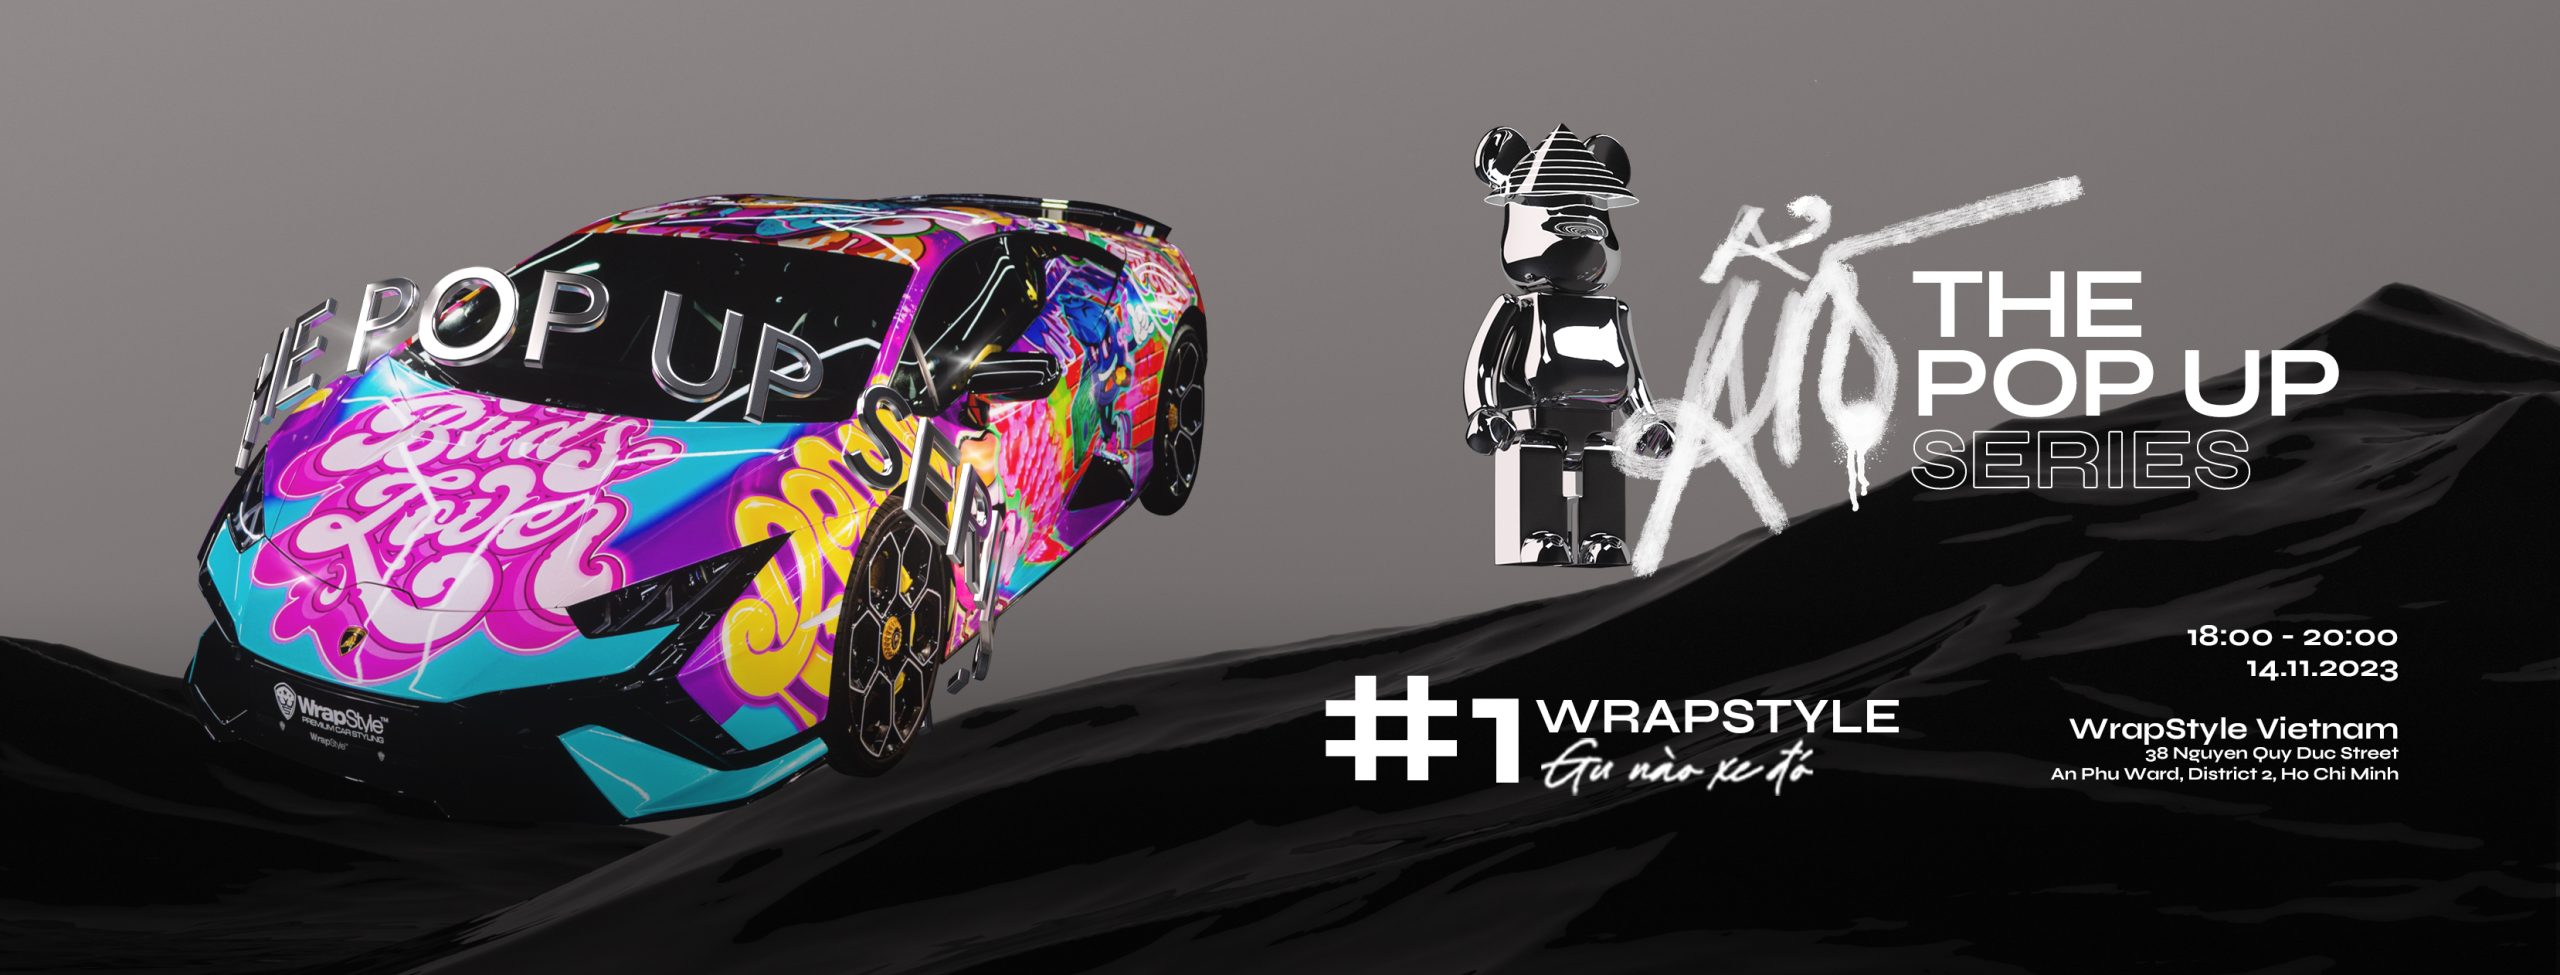 Ẩn Concept – The Pop Up Series #1 x WrapStyle: Gu nào xe đó